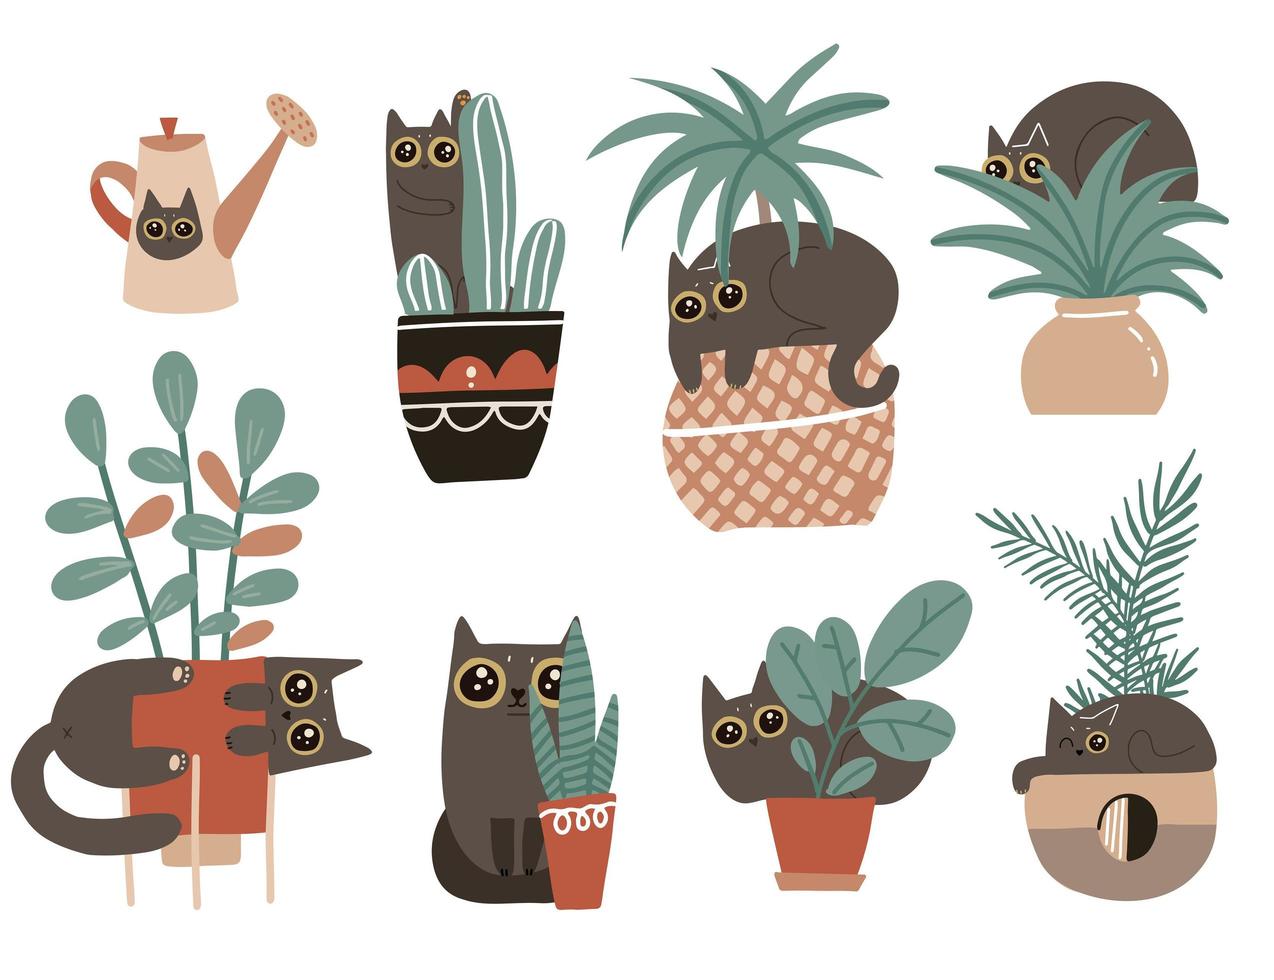 skyldig katt teckenuppsättning. söta stygga lekfulla katter skadar krukväxter. svart kattunge leker med krukväxter i blomkrukor. isolerade vektor handritad skandinavisk tecknad illustration.